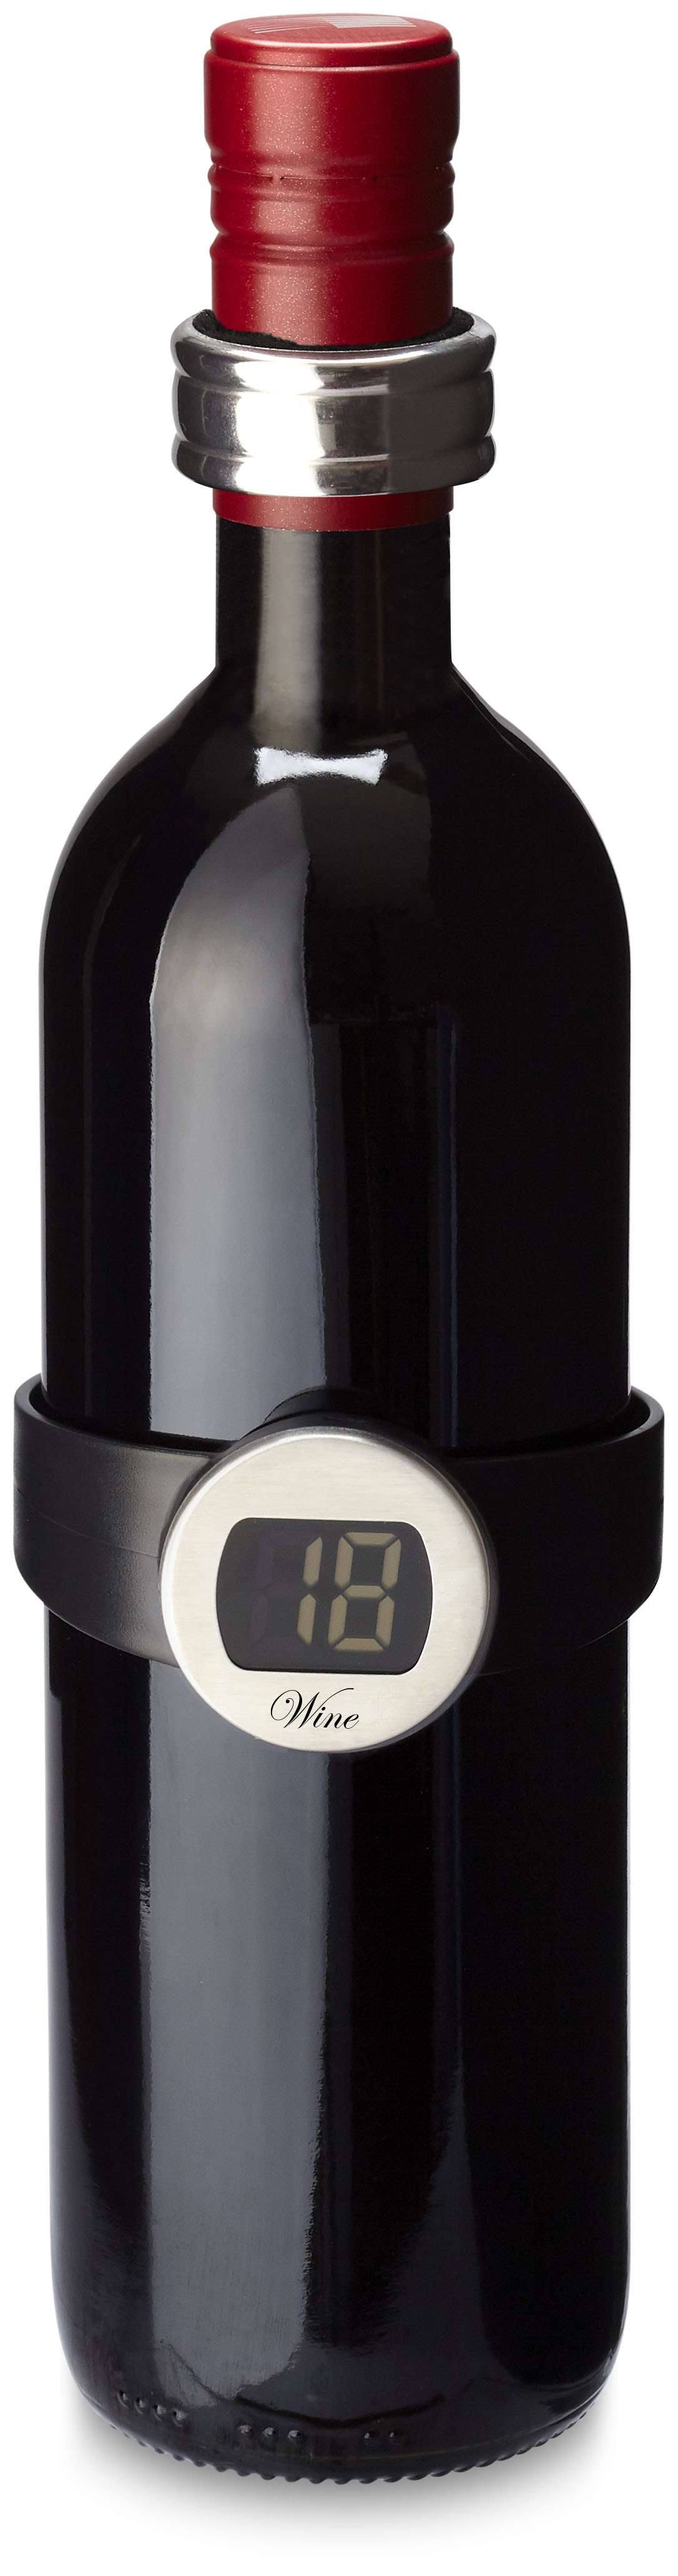 Coffret à vin publicitaire Barlot avec thermomètre digital et collier de Bacchus